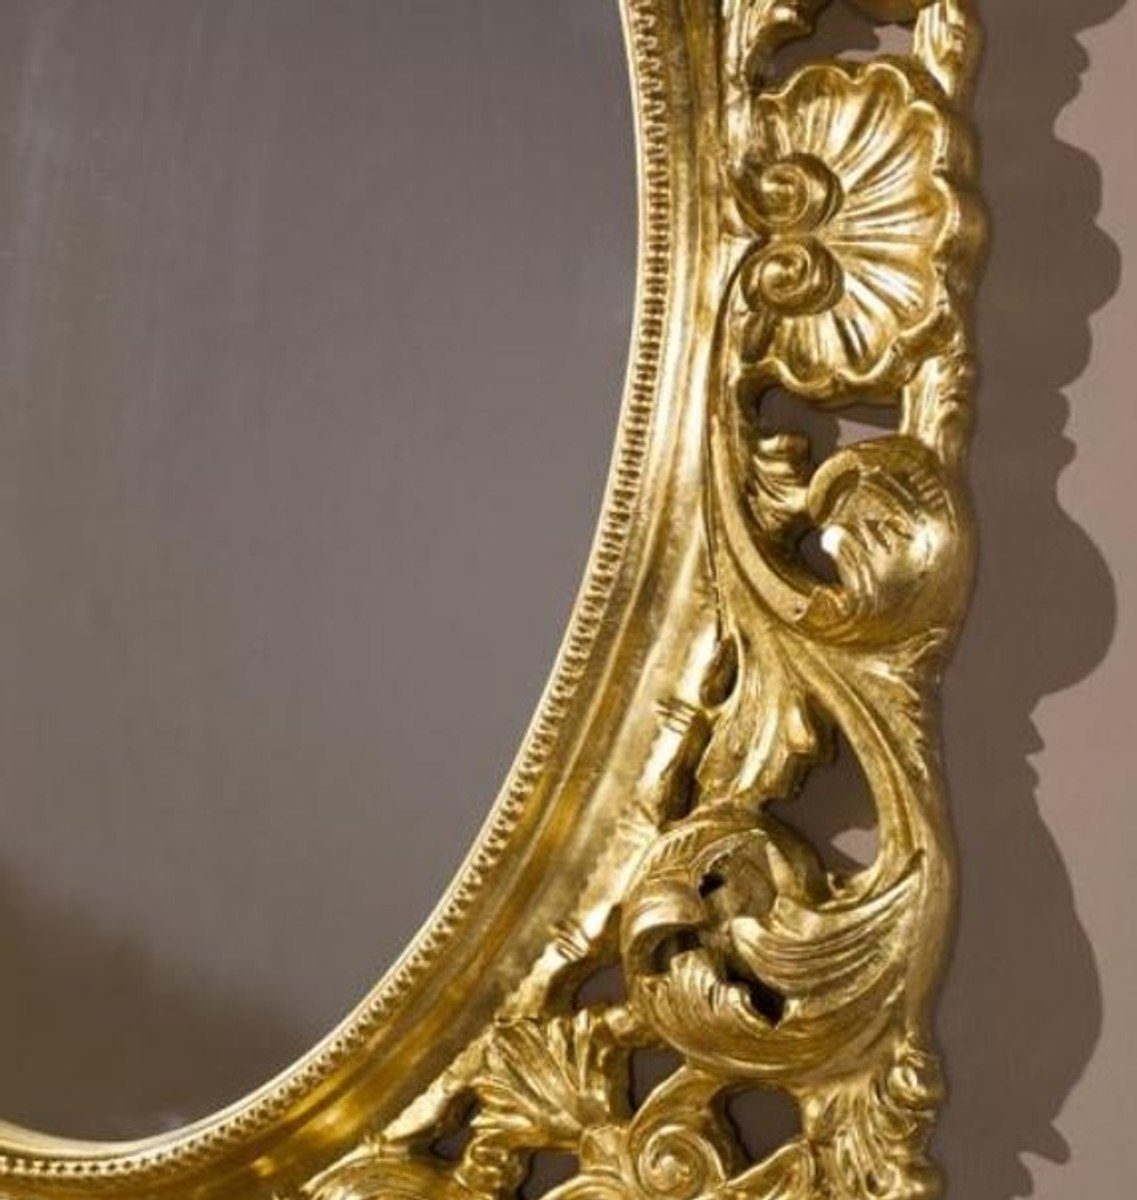 95 Barock Padrino x - Luxus Spiegel Wandspiegel Spiegel Casa Wohnzimmer Garderoben Barock Gold - 6 cm Barockspiegel 73 Spiegel H. - x